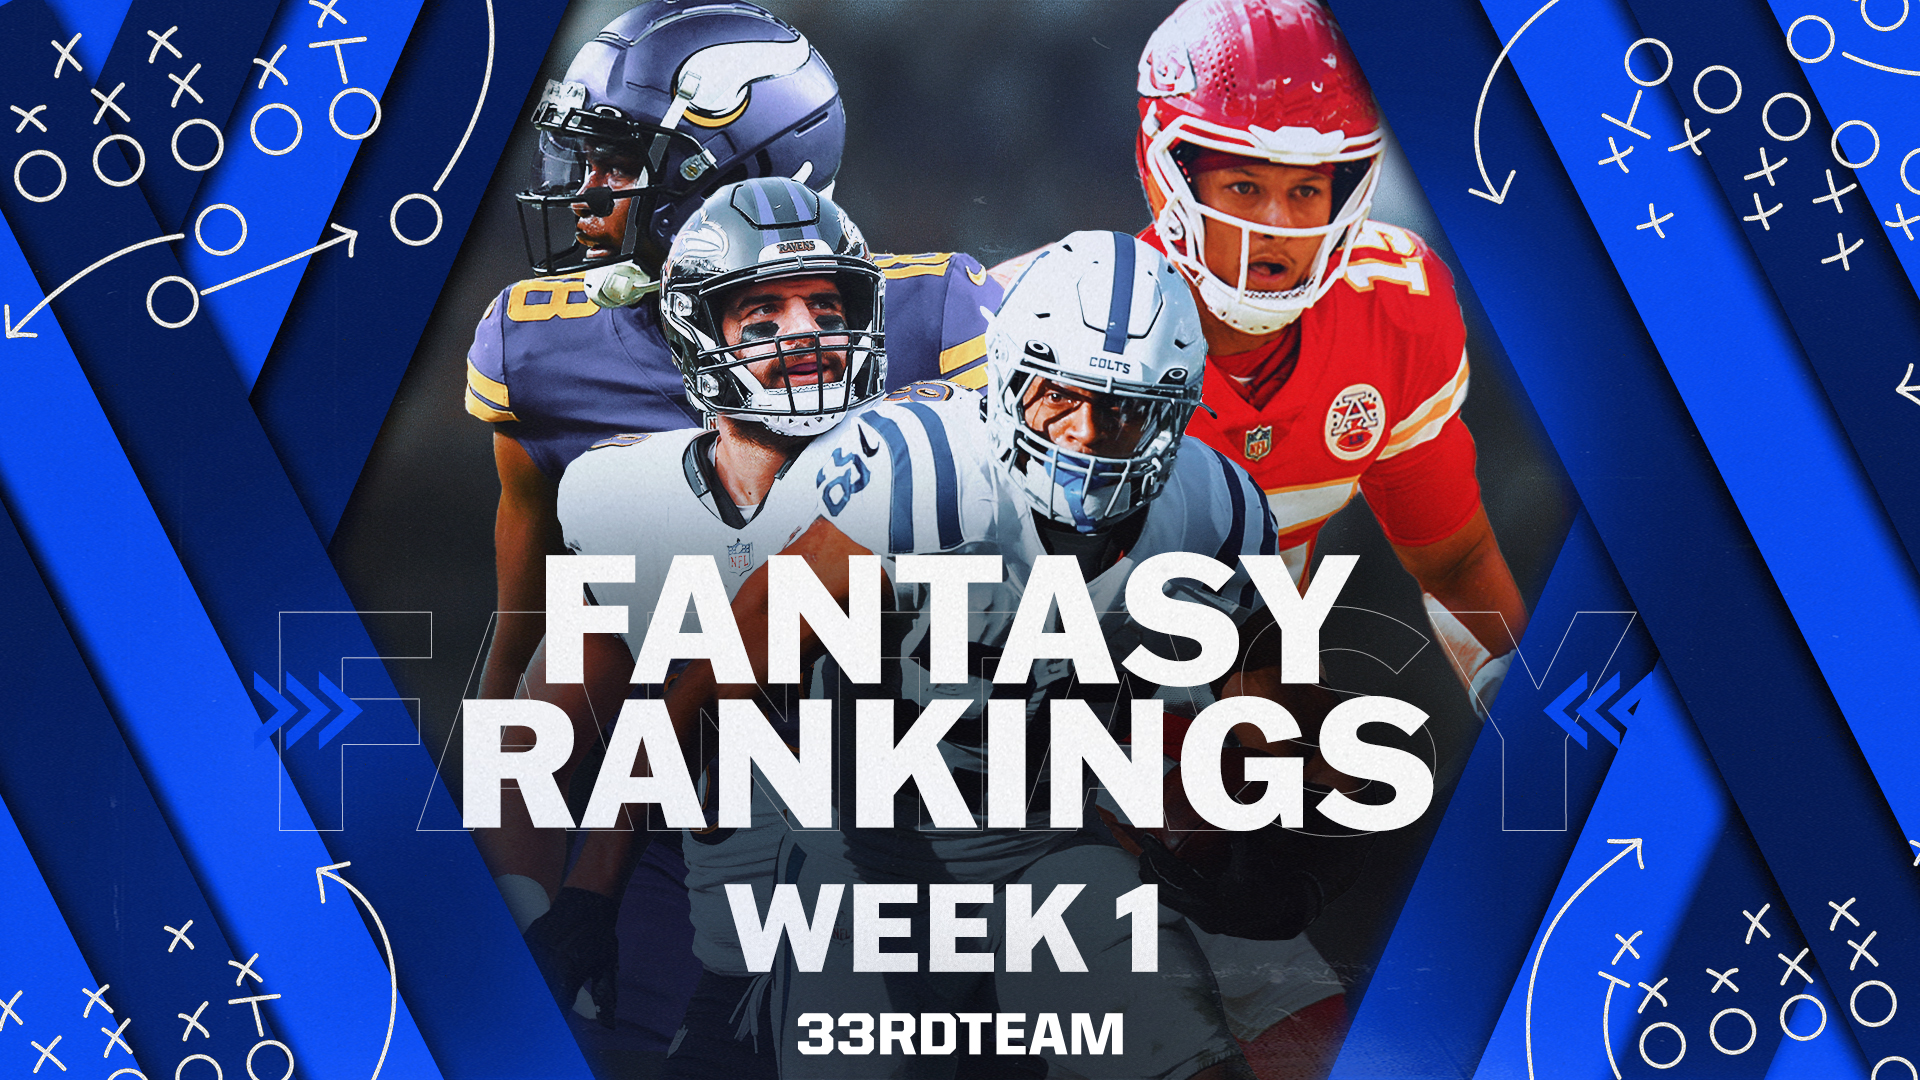 week 1 fantasy rankings